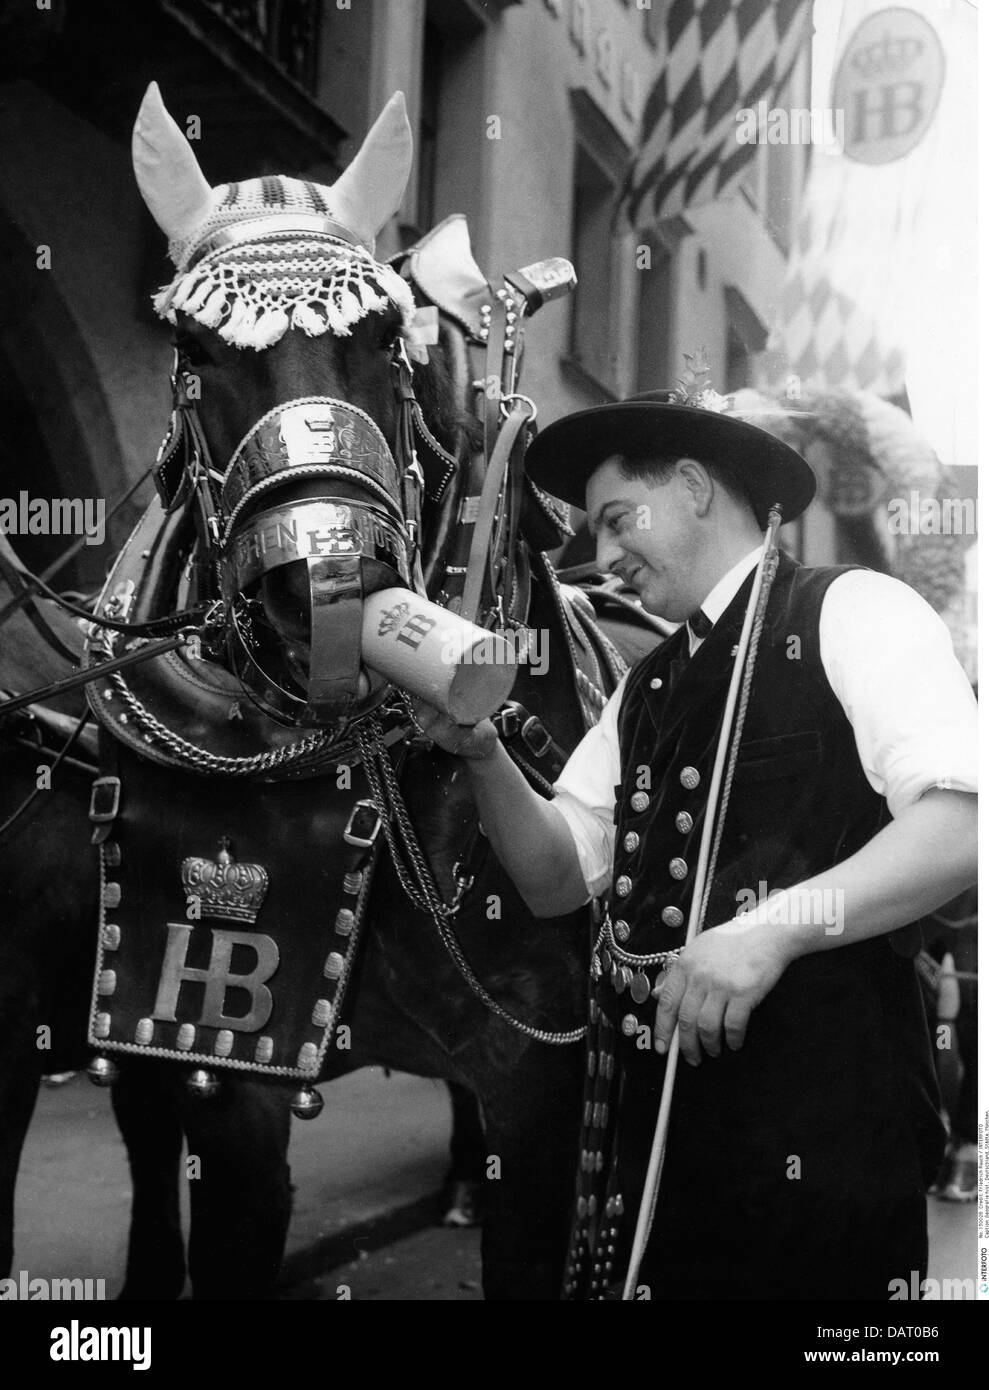 Alkohol, Bier, Brauereicoachman von Hofbräuhaus mit Pferdekutschen Maibock, München, 1963, Zusatz-Rights-Clearences-nicht erhältlich Stockfoto